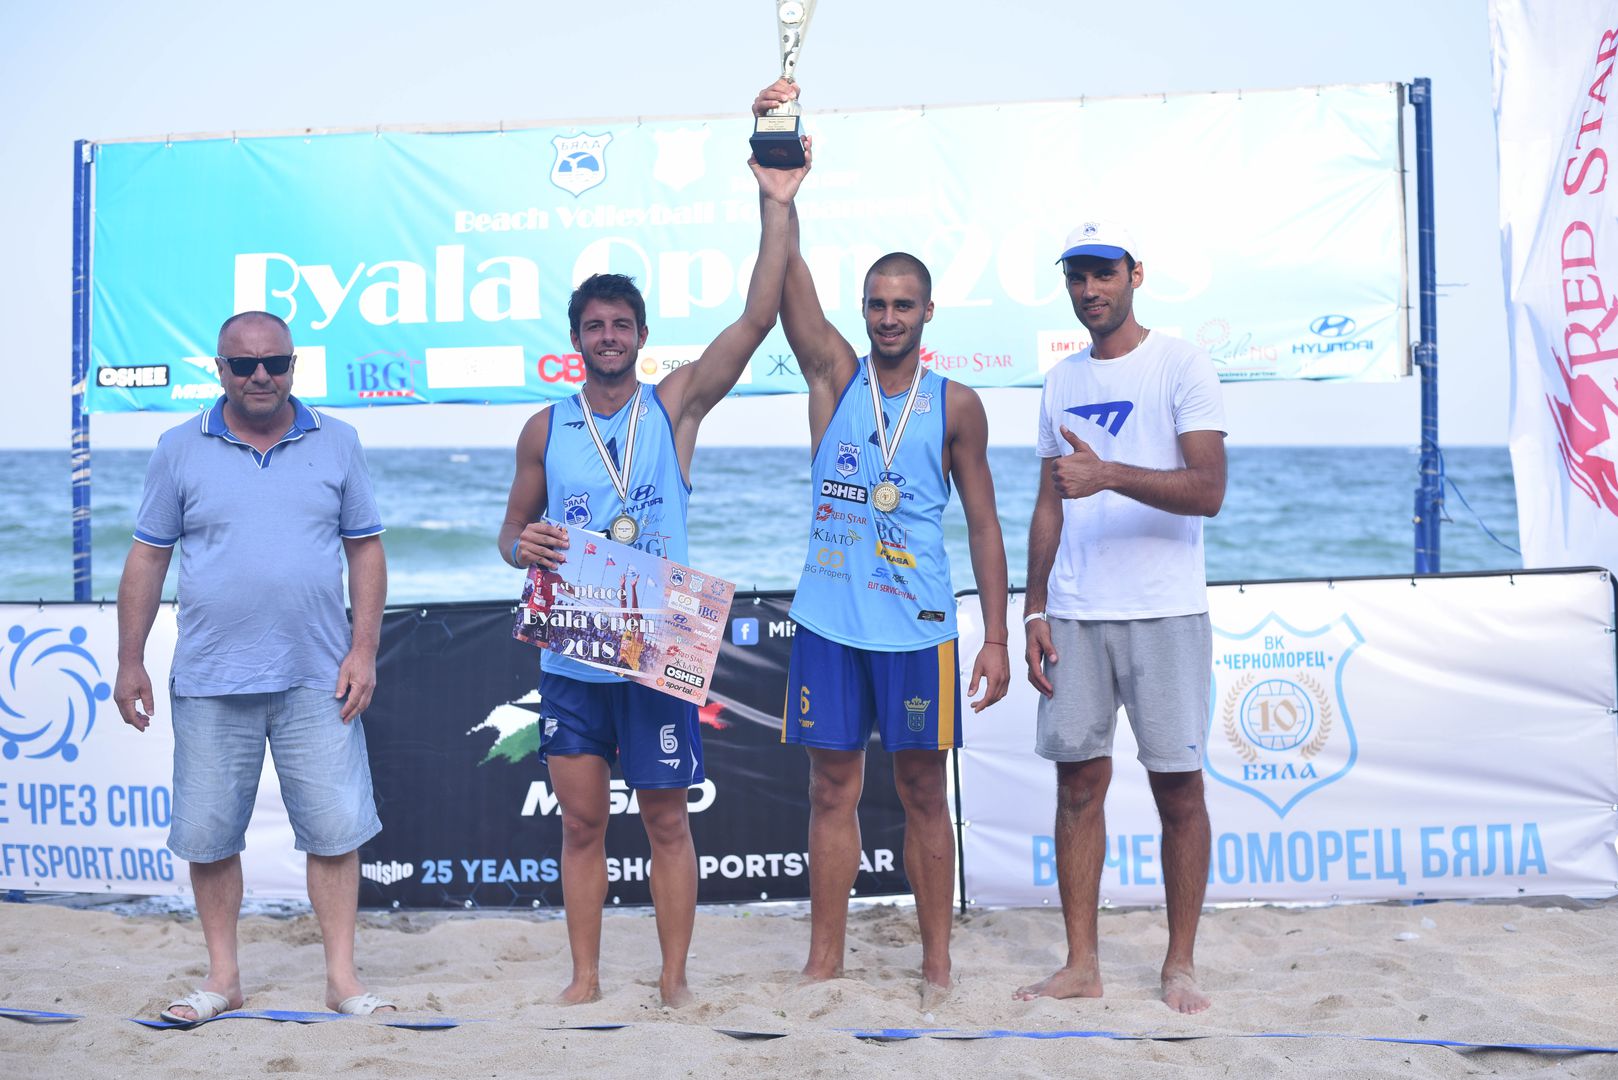 Страхотни емоции по време на първото издание на турнира по плажен волейбол "Byala Open" 2018